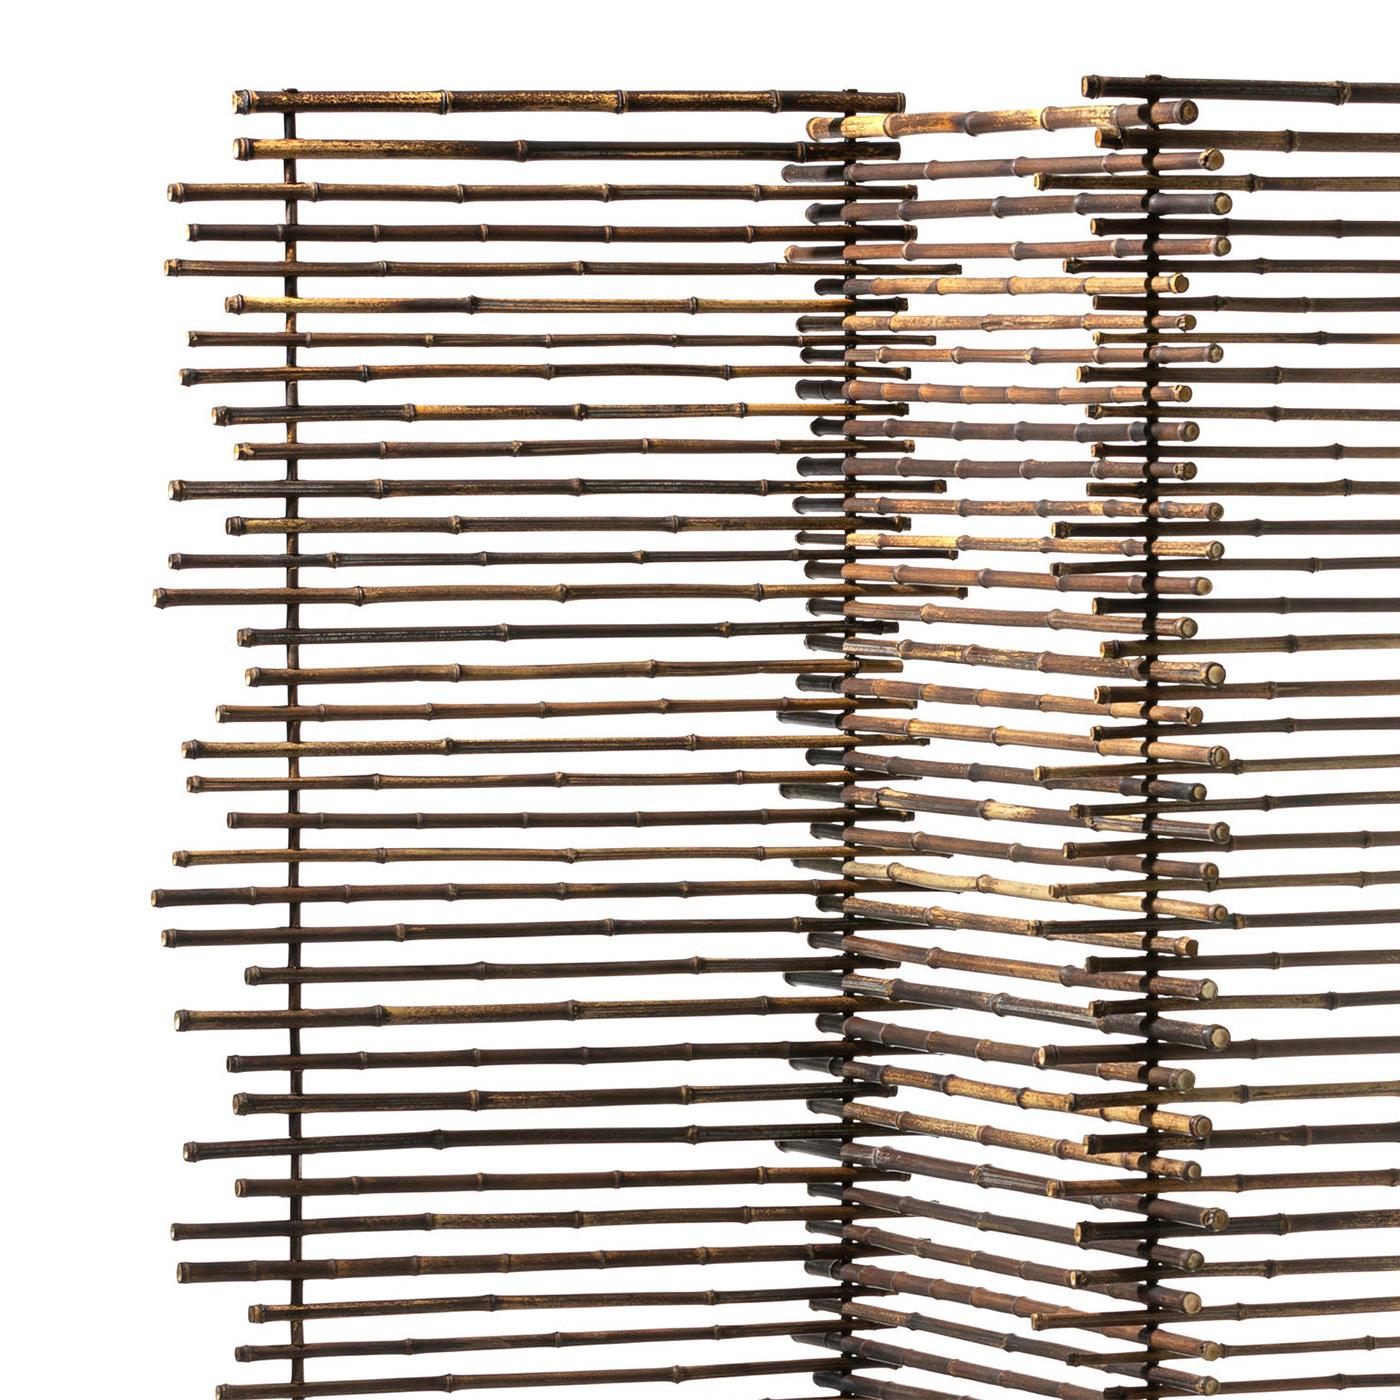 Schermo Bamboos con 3 schermi pieghevoli
in bambù nero. Ogni parte pieghevole misura L60cmxH180cm.
Dimensioni totali: L175xD60xH180cm.